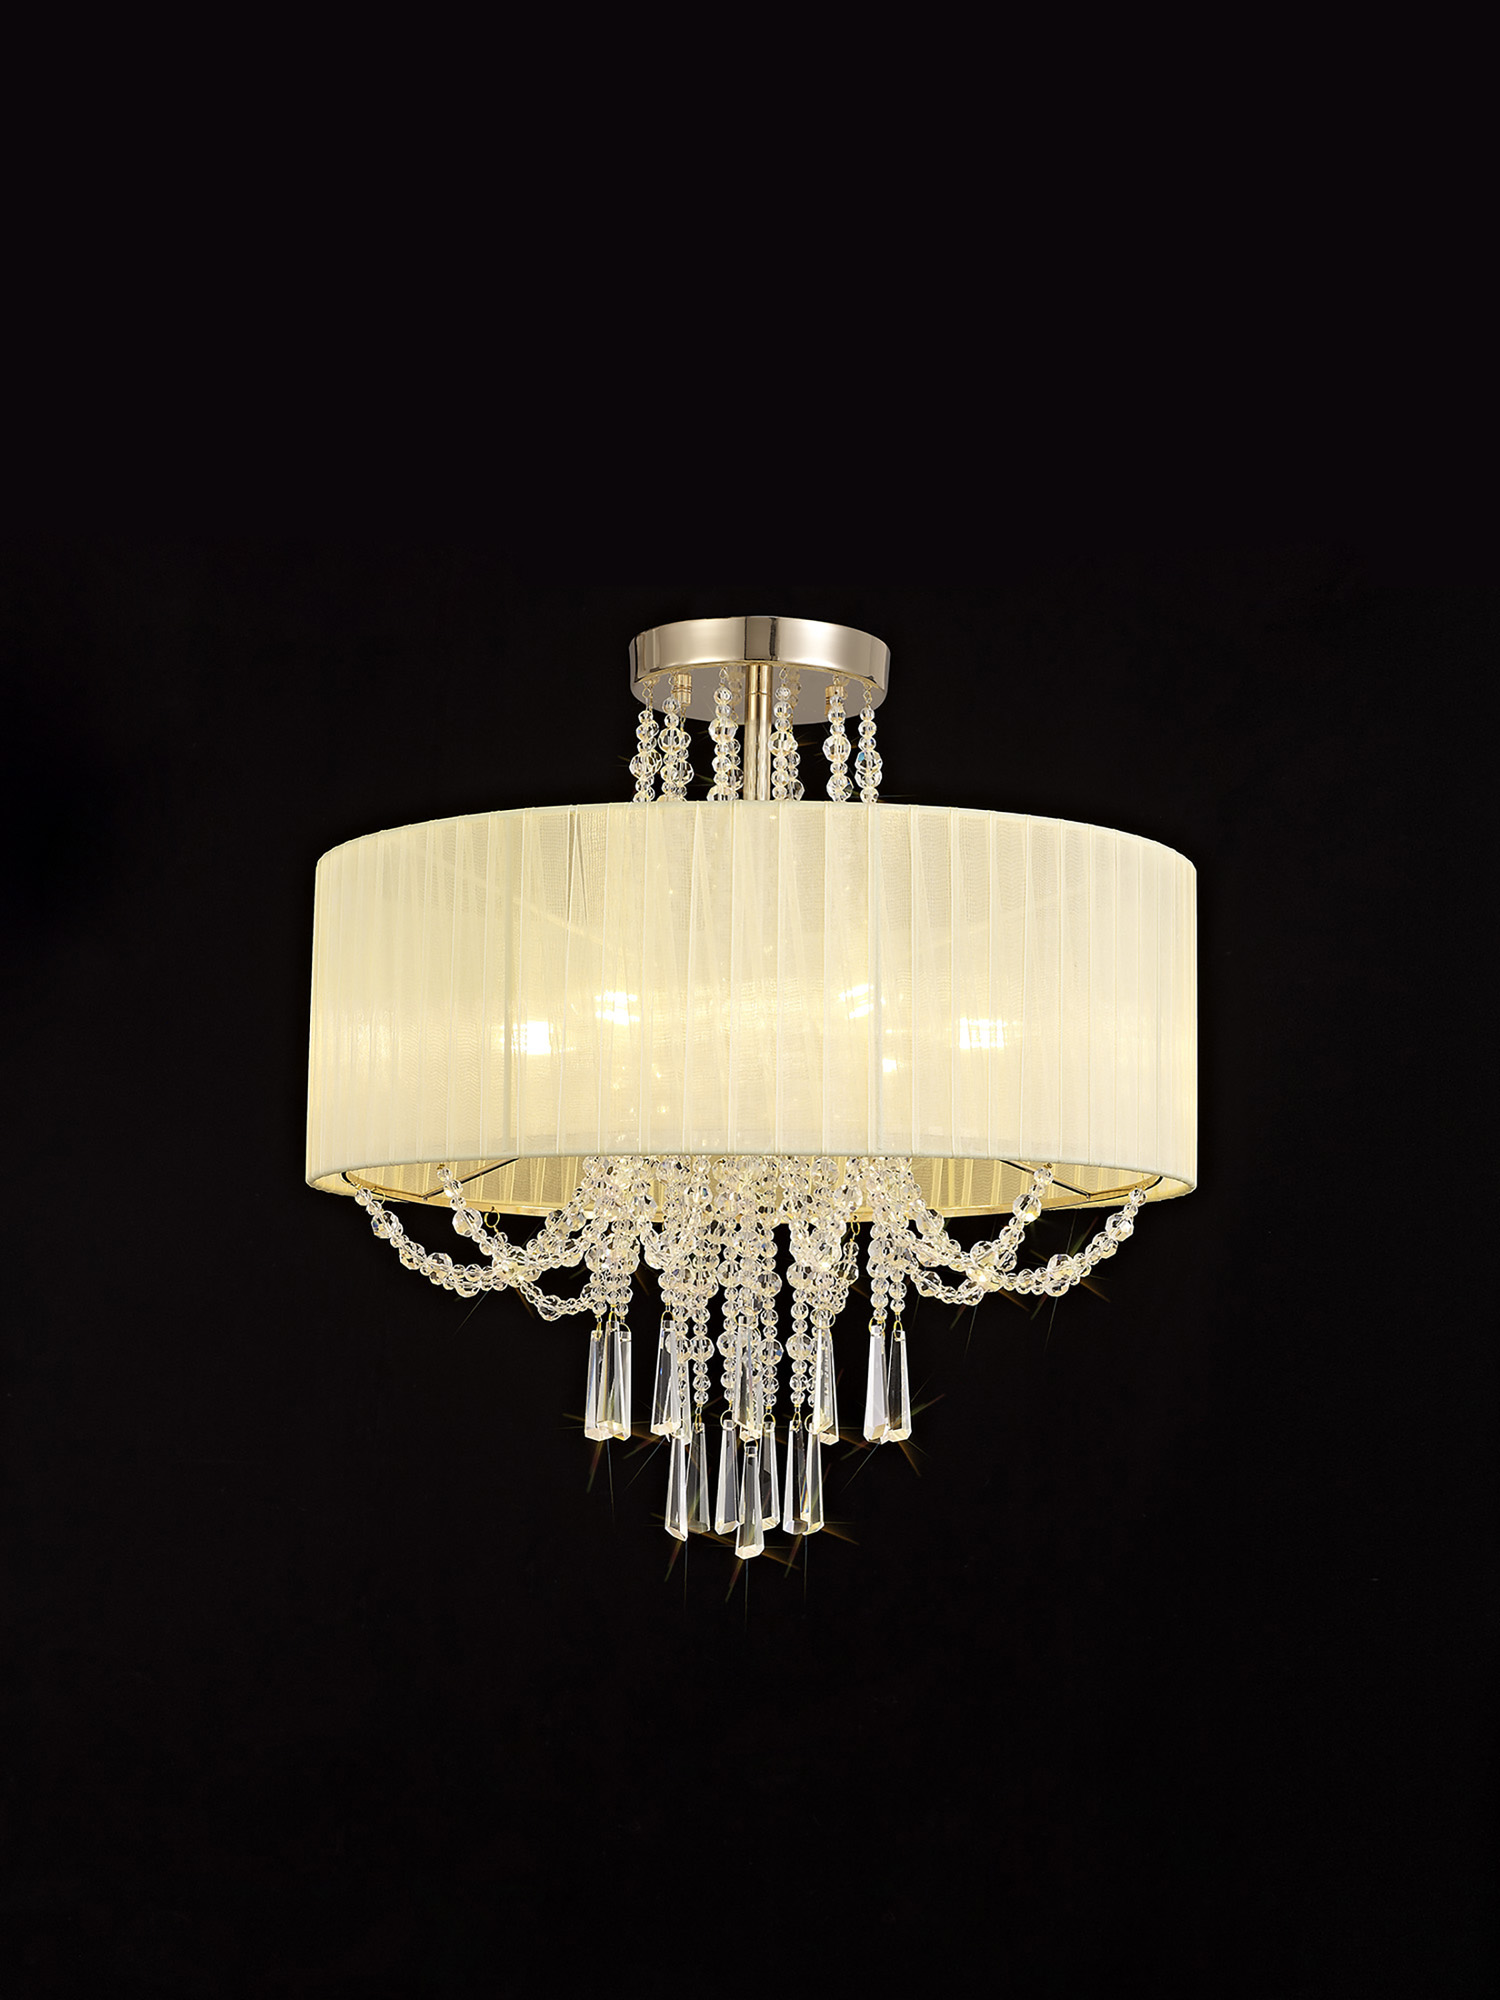 Freida French Gold-Ivory Cream Crystal Ceiling Lights Diyas Modern Chandeliers